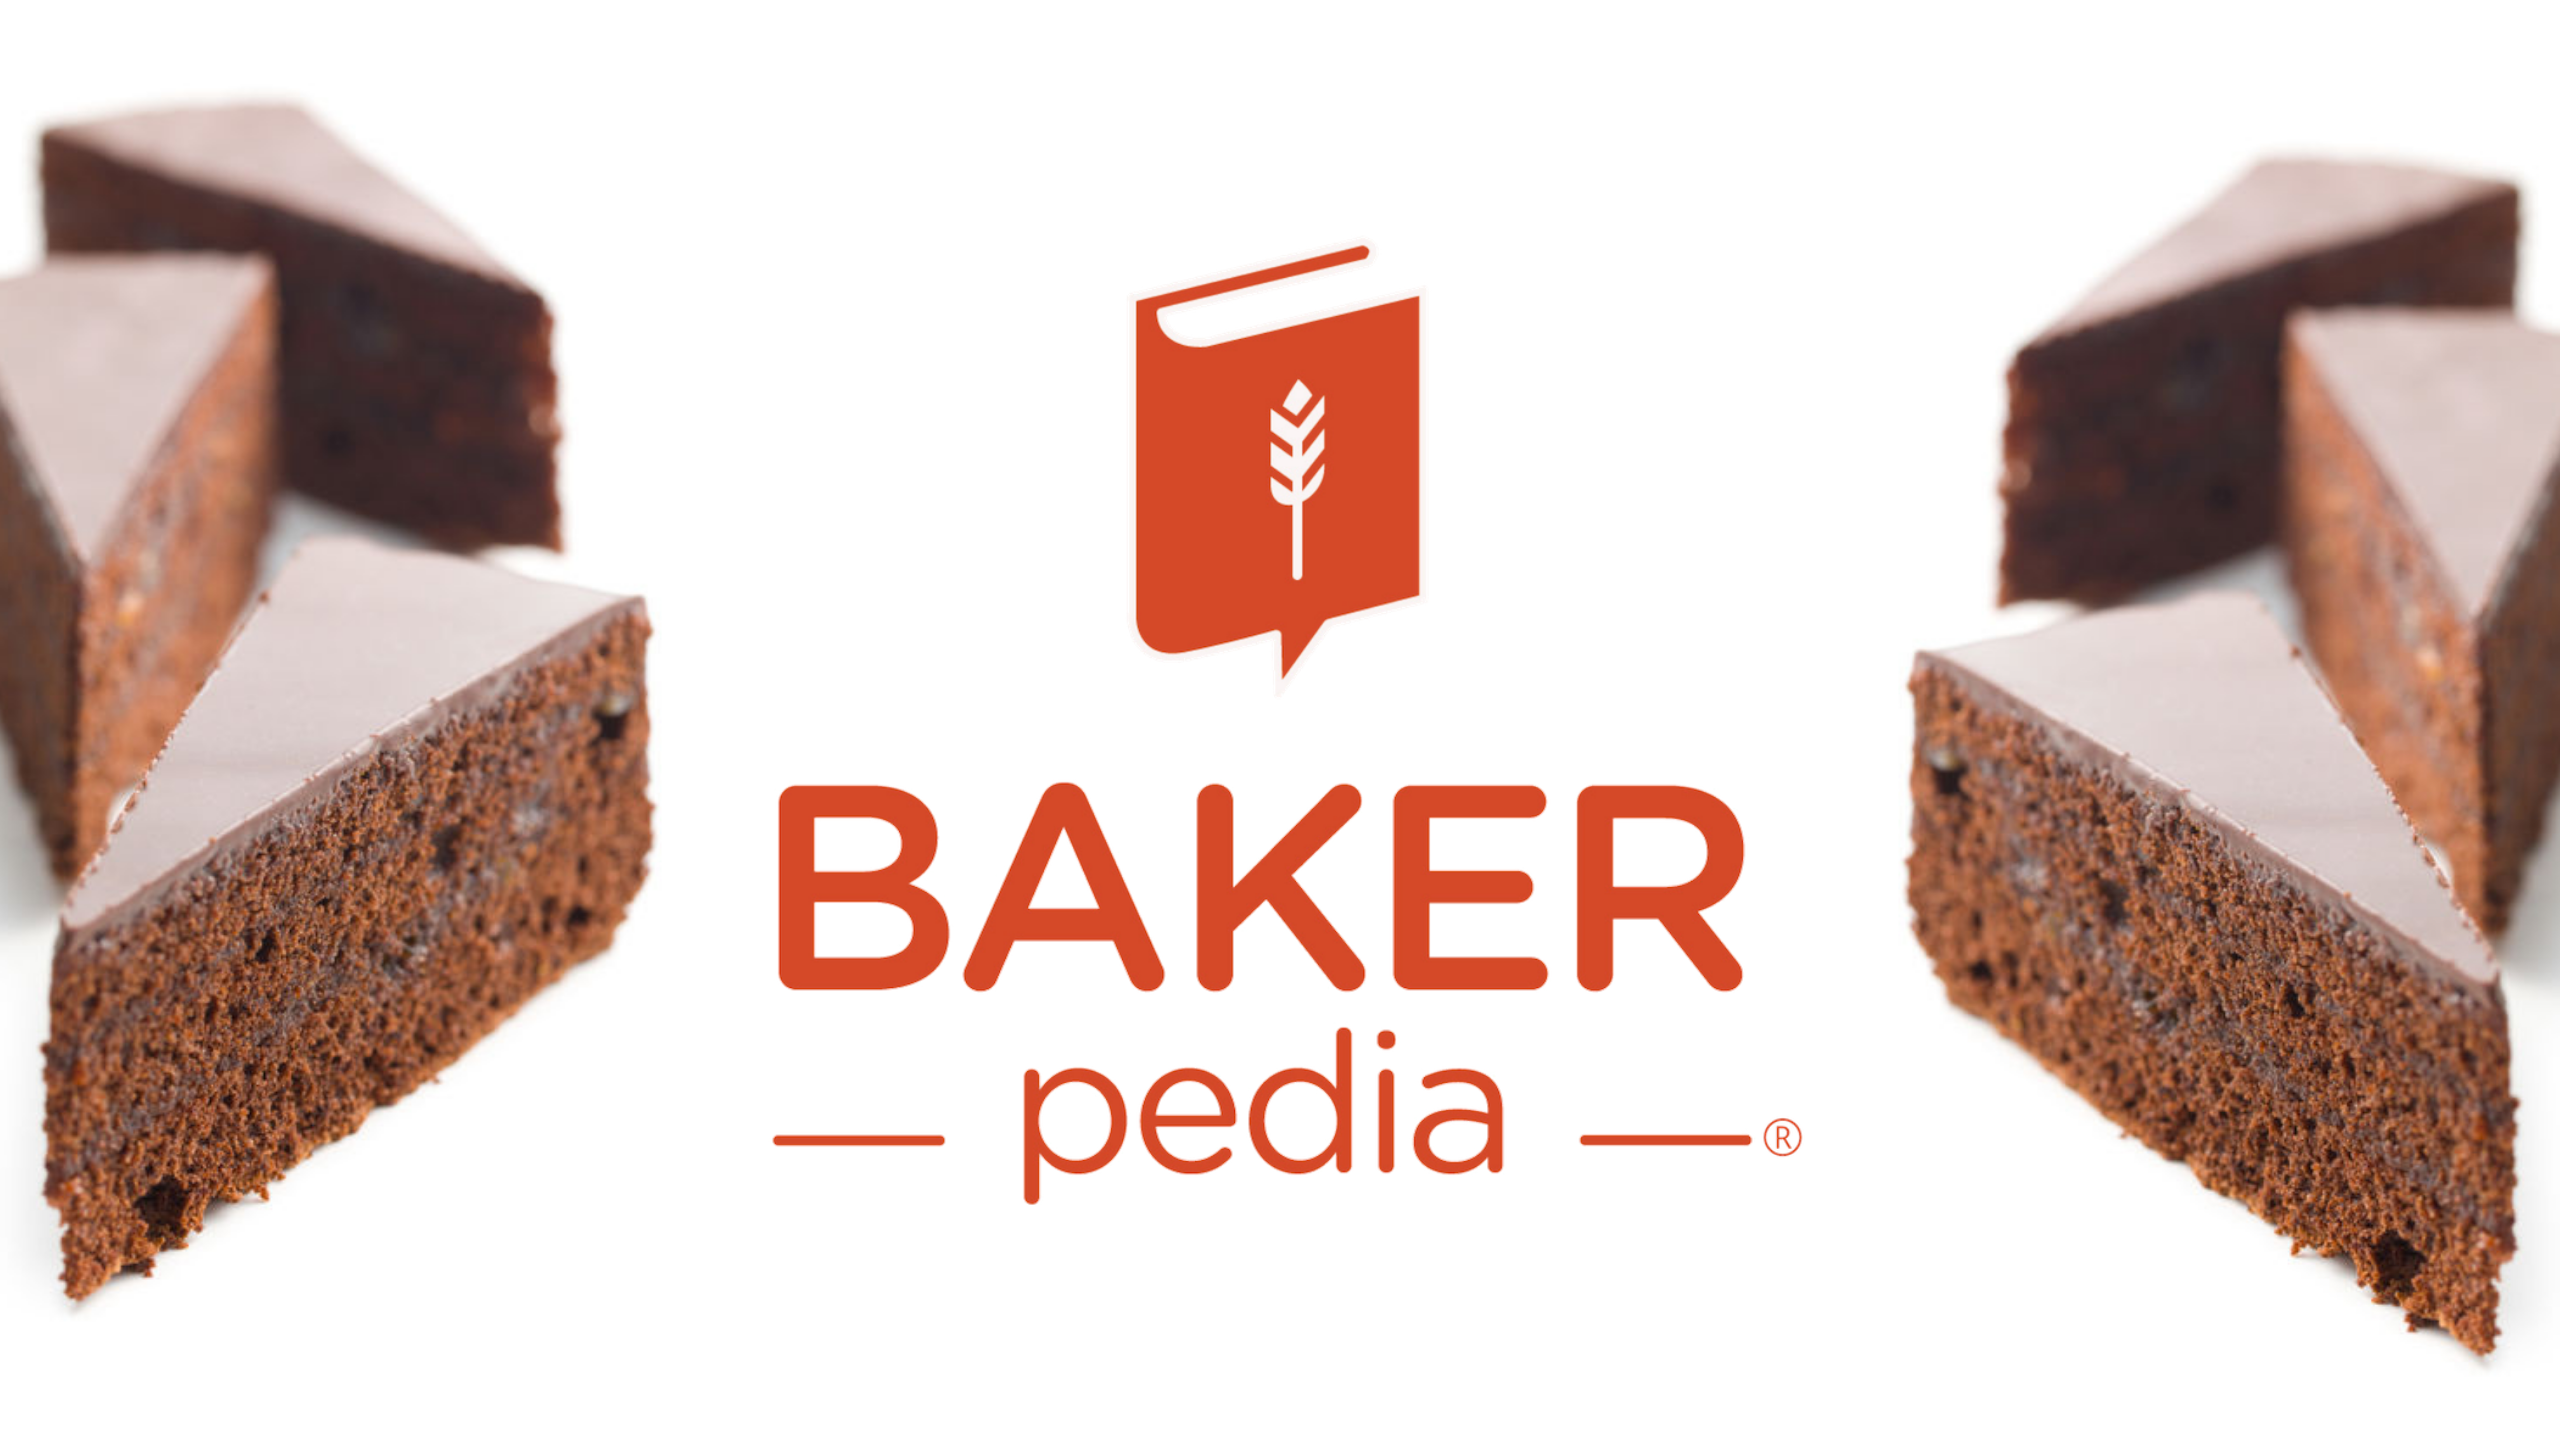 BAKERpedia: Bạn có yêu thích nghệ thuật làm bánh? Hãy đến và khám phá BAKERpedia - cổng thông tin chuyên sâu về bánh cho các chuyên gia và nhà làm bánh. Trang web tổng hợp kiến thức, công thức và kinh nghiệm của những người có kinh nghiệm trong ngành làm bánh sẽ không làm bạn thất vọng.